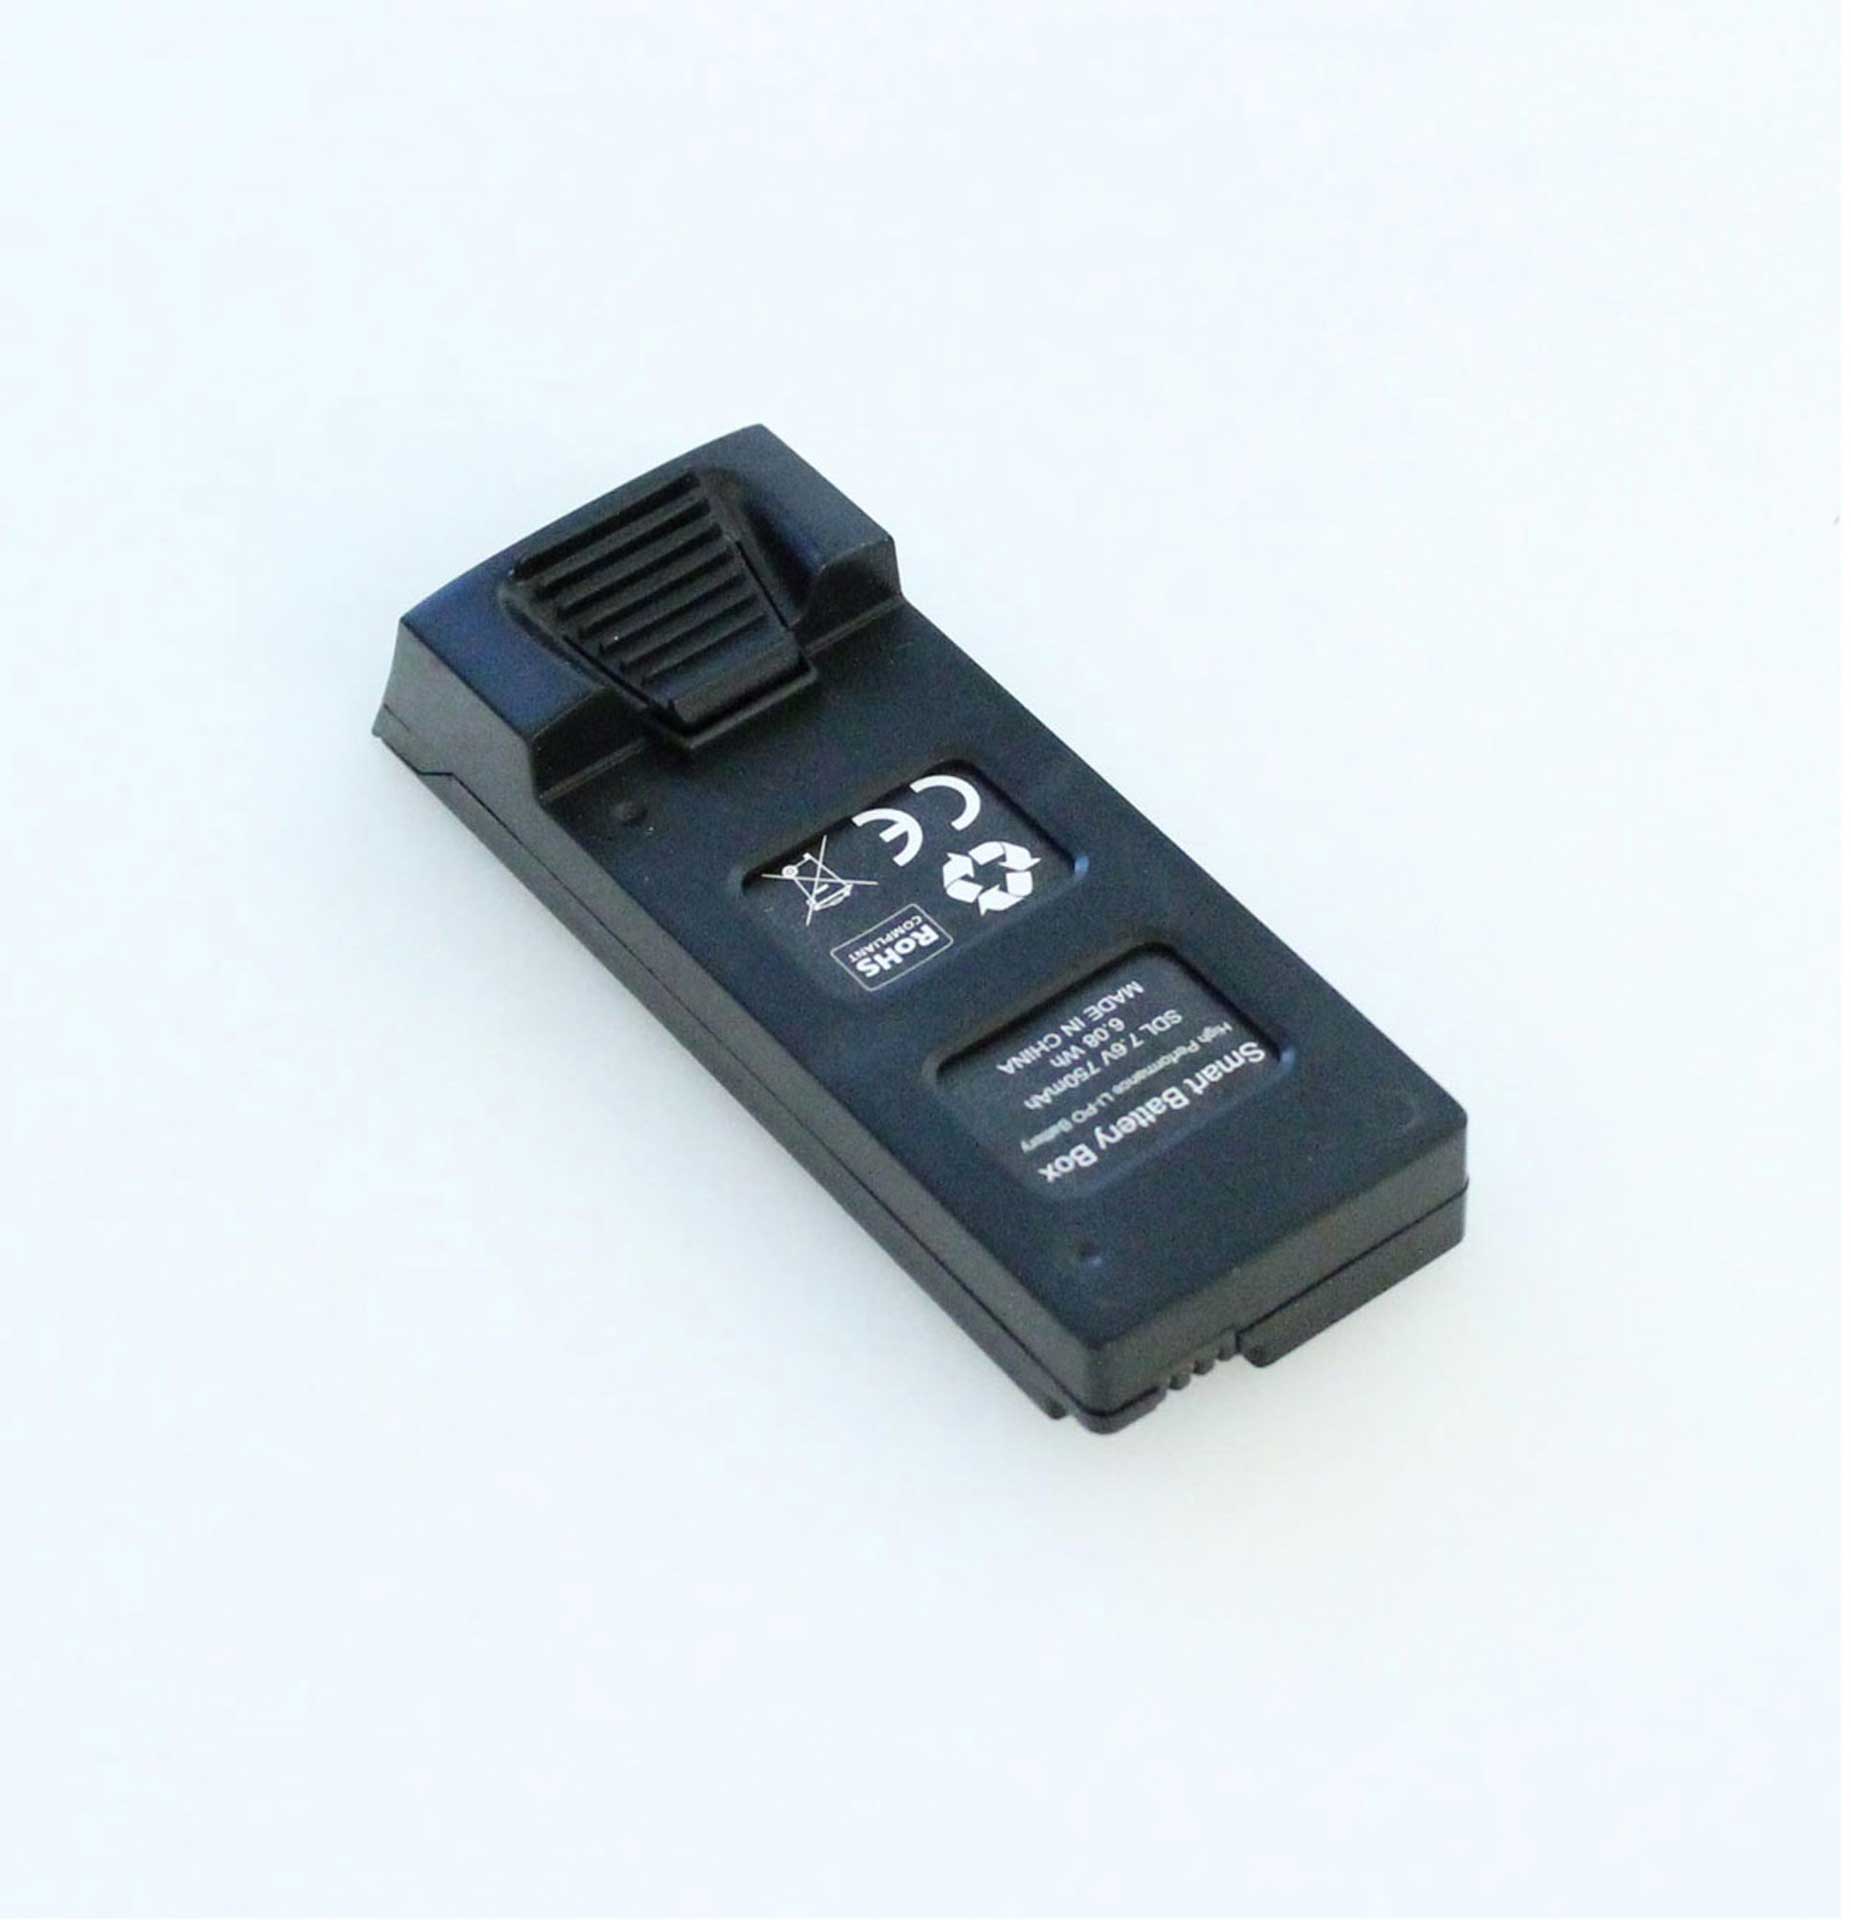 DRIVE & FLY MODELS BATTERIE POUR 9270 - SKYWATCHER GPS Batterie Lipo